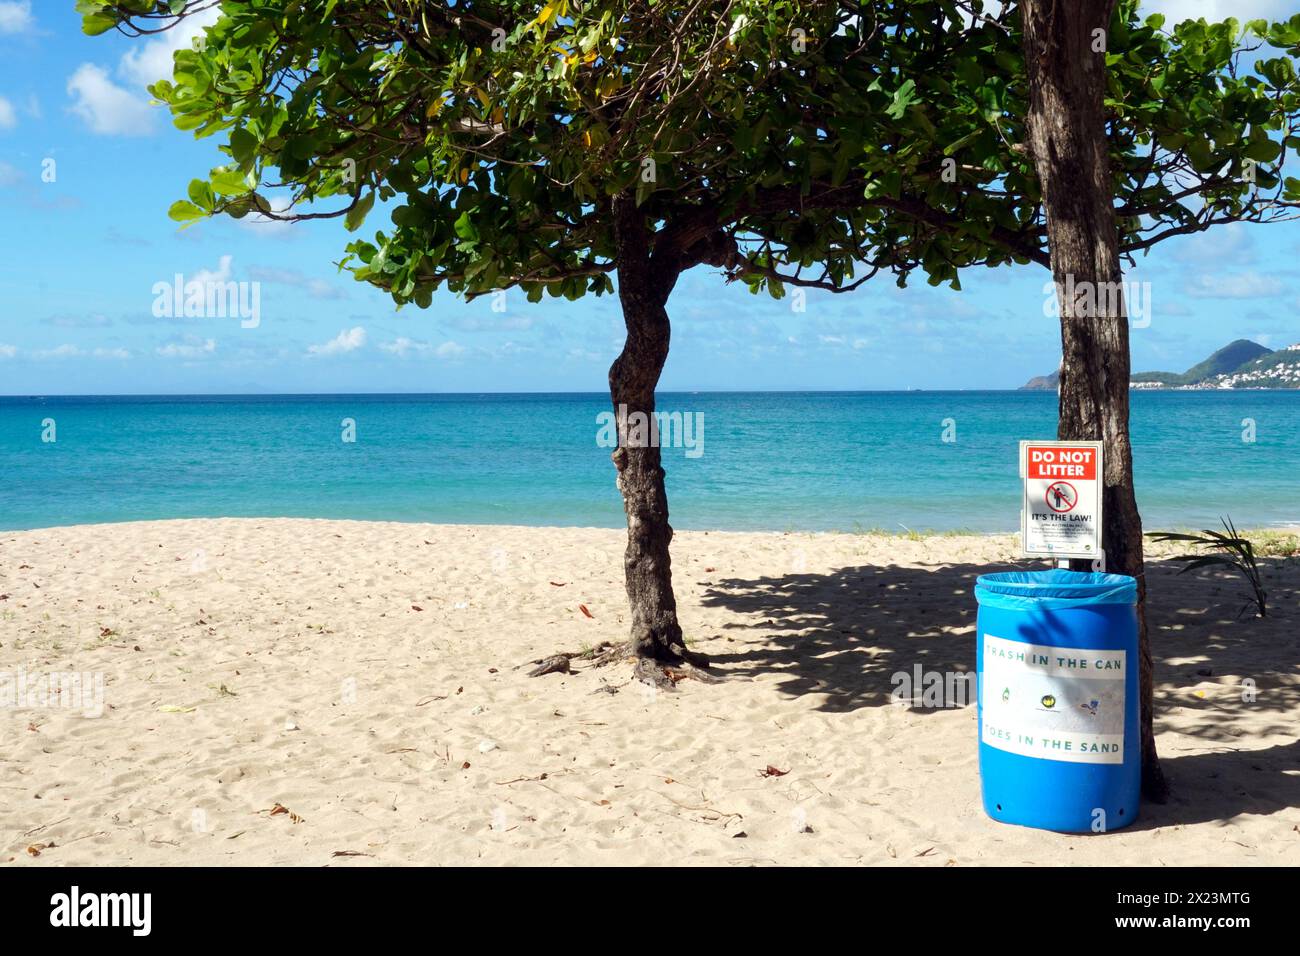 Poubelle avec panneau d'avertissement, ne jetez pas de déchets, sur une plage de sable romantique avec mer bleu Azur à Castries, Sainte-Lucie. Banque D'Images